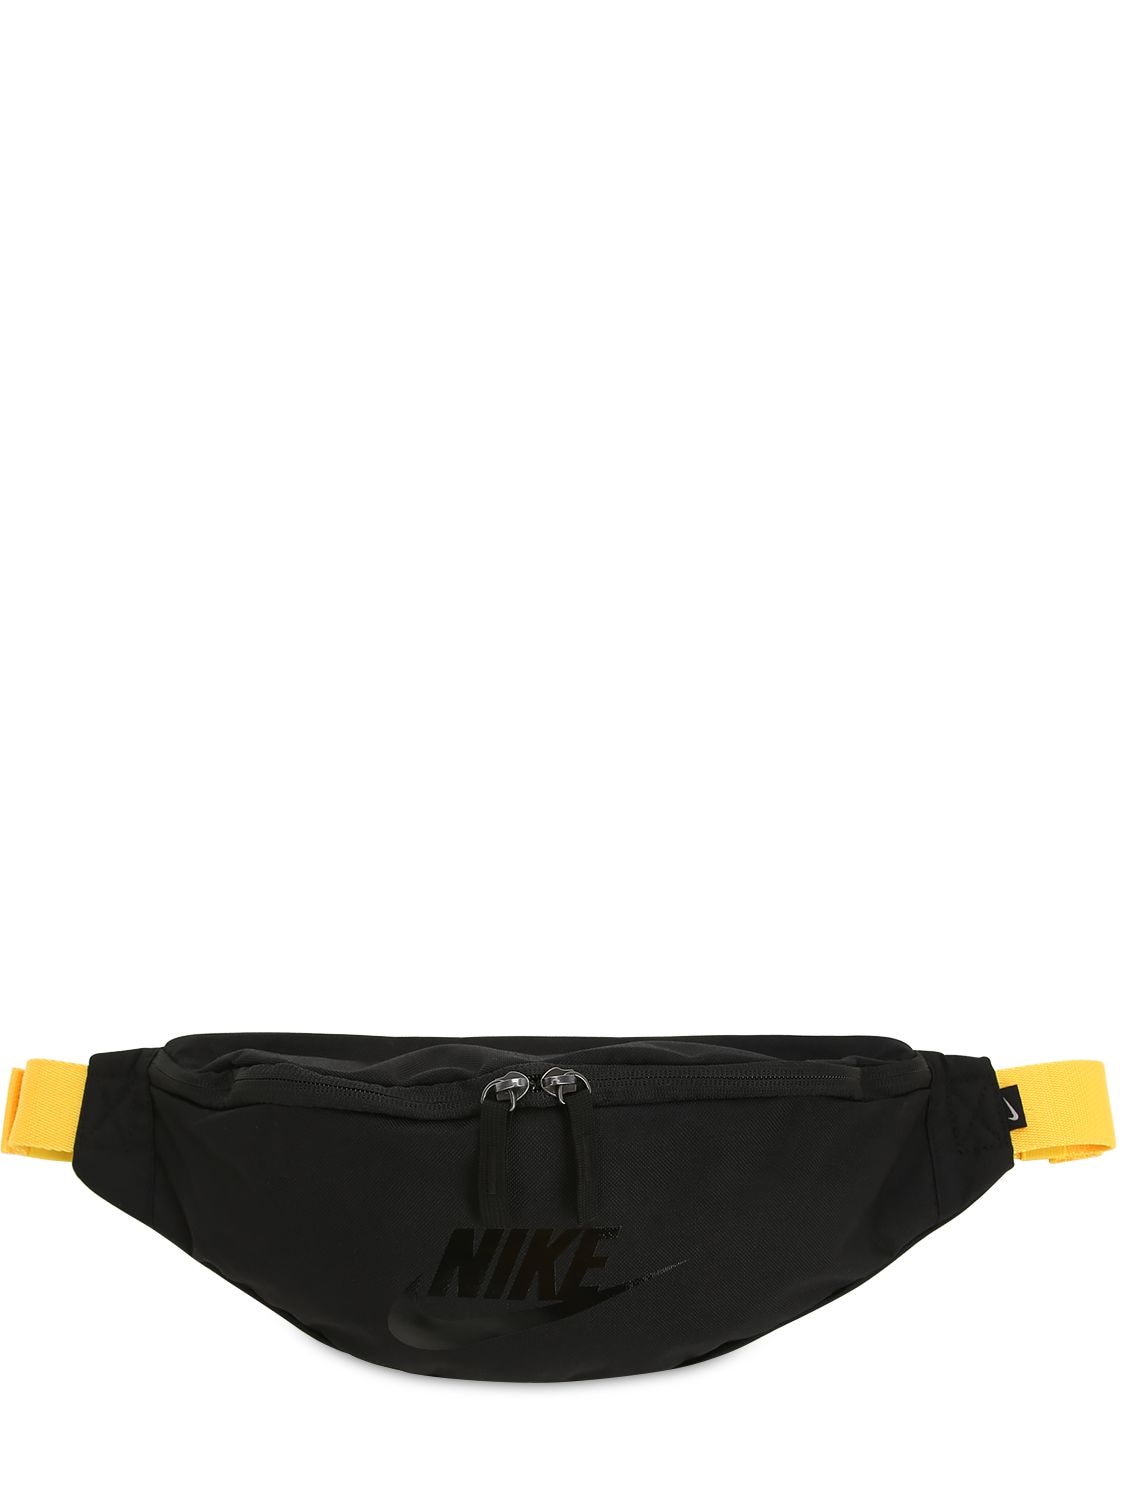 Nike Sportswear Heritage Techno Belt Bag In Black,yellow